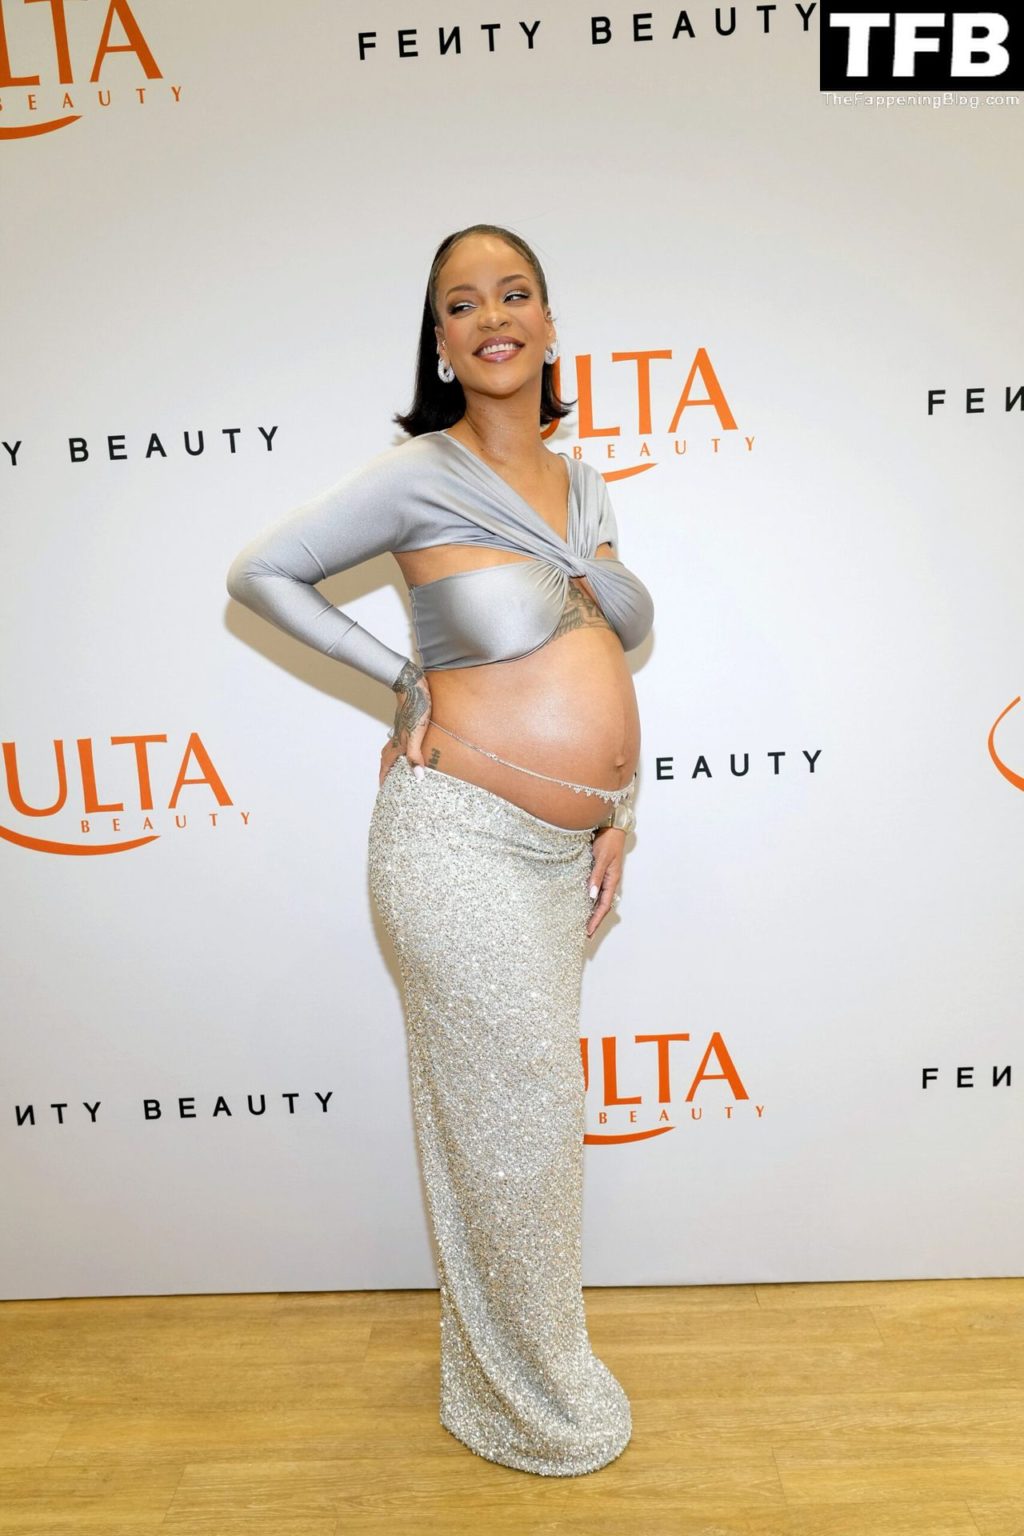 Rihanna Sexy The Fappening Blog 14 4 1024x1536 - Rihanna Celebrates the Launch of Fenty Beauty at Ulta Beauty (28 Photos)